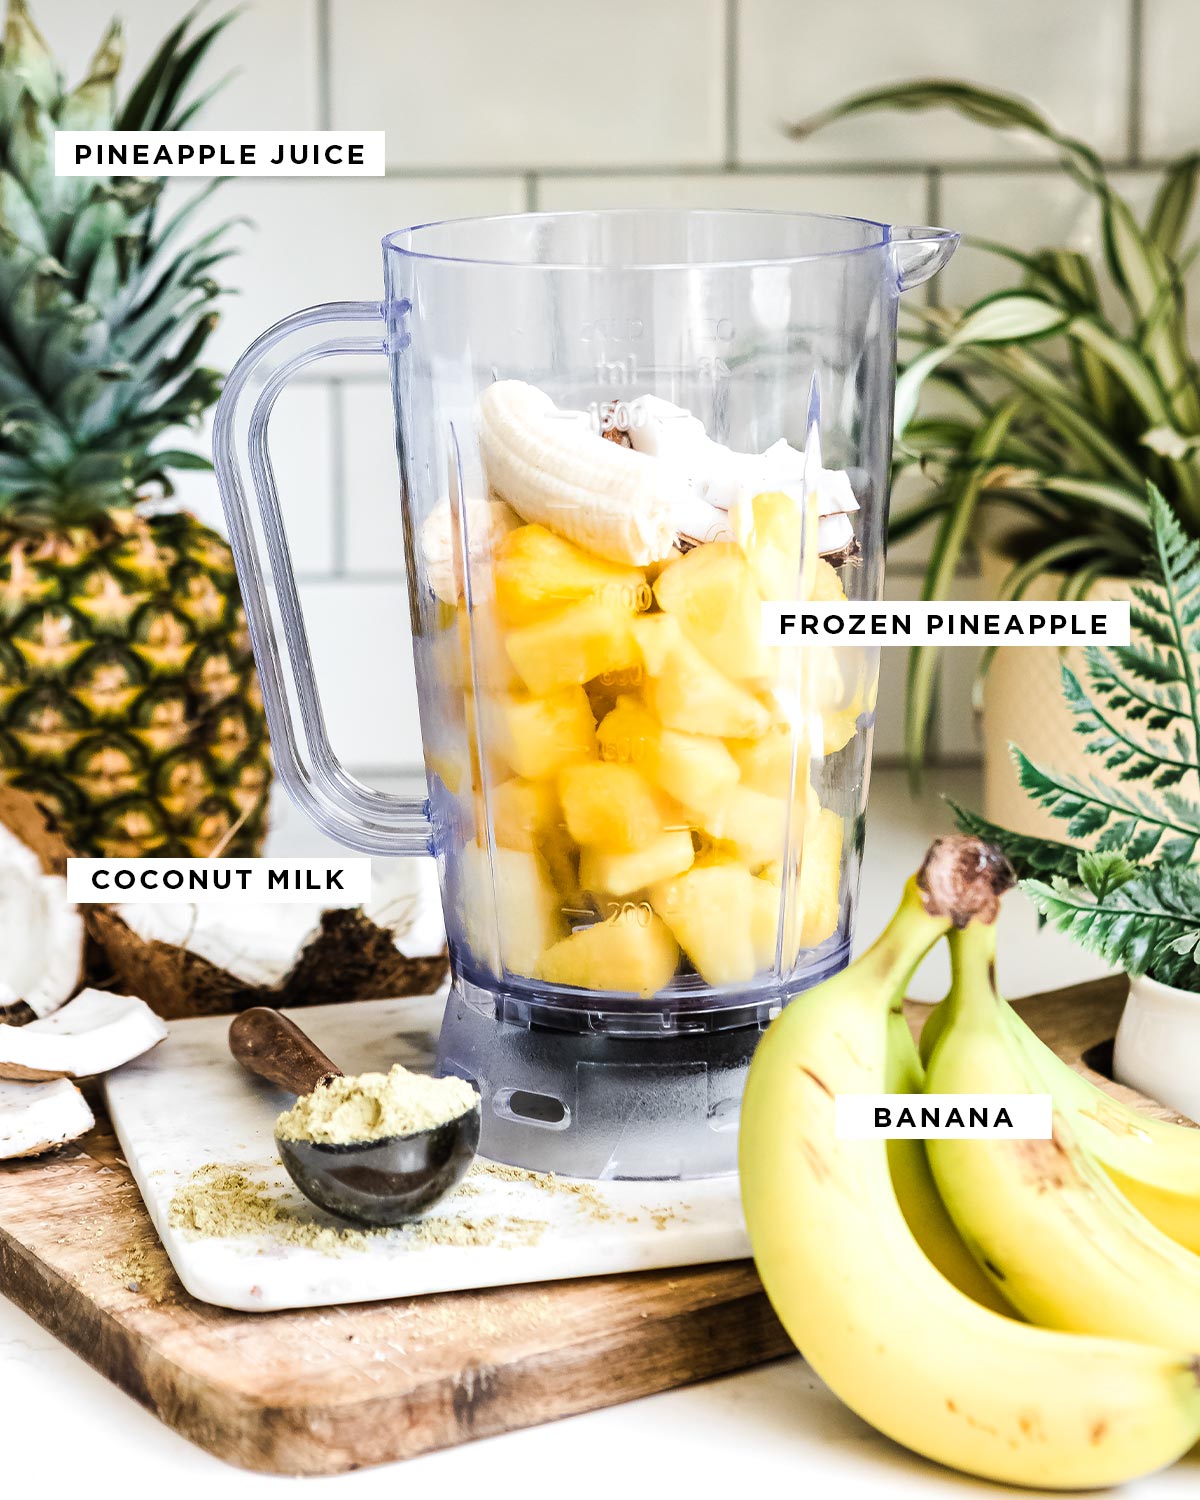 Ingredienti etichettati tra cui succo d'ananas, ananas congelato, latte di cocco e banana.